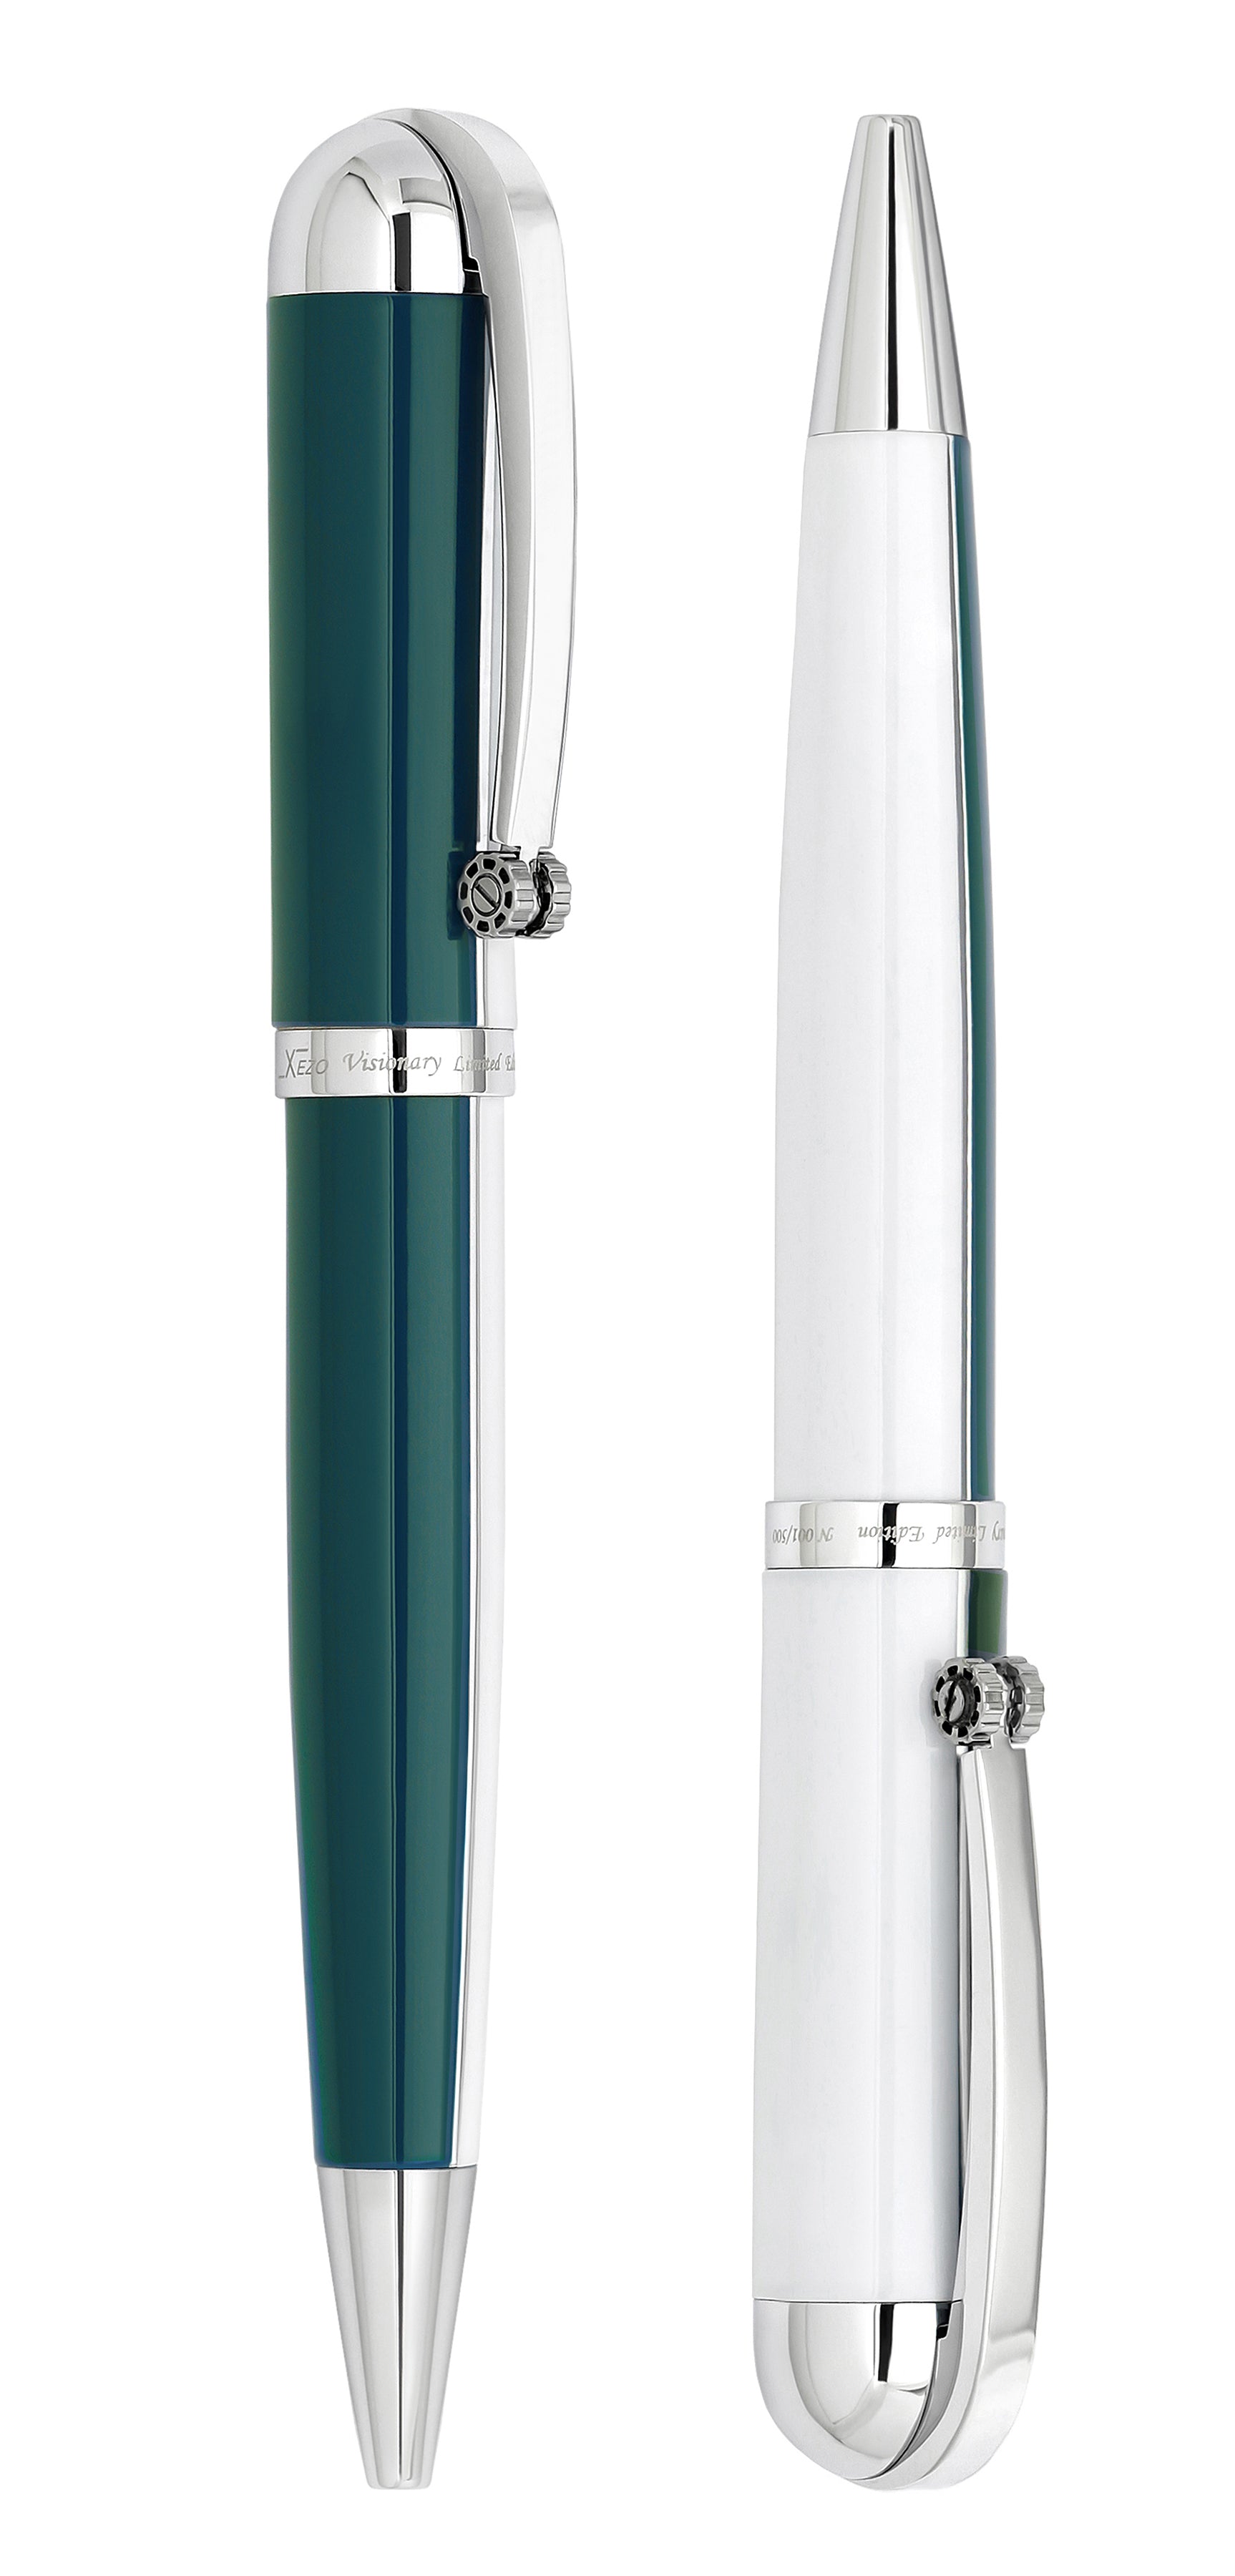 Visionary® Brass & Aluminum Enameled Ballpoint Pen - Teal Green / White